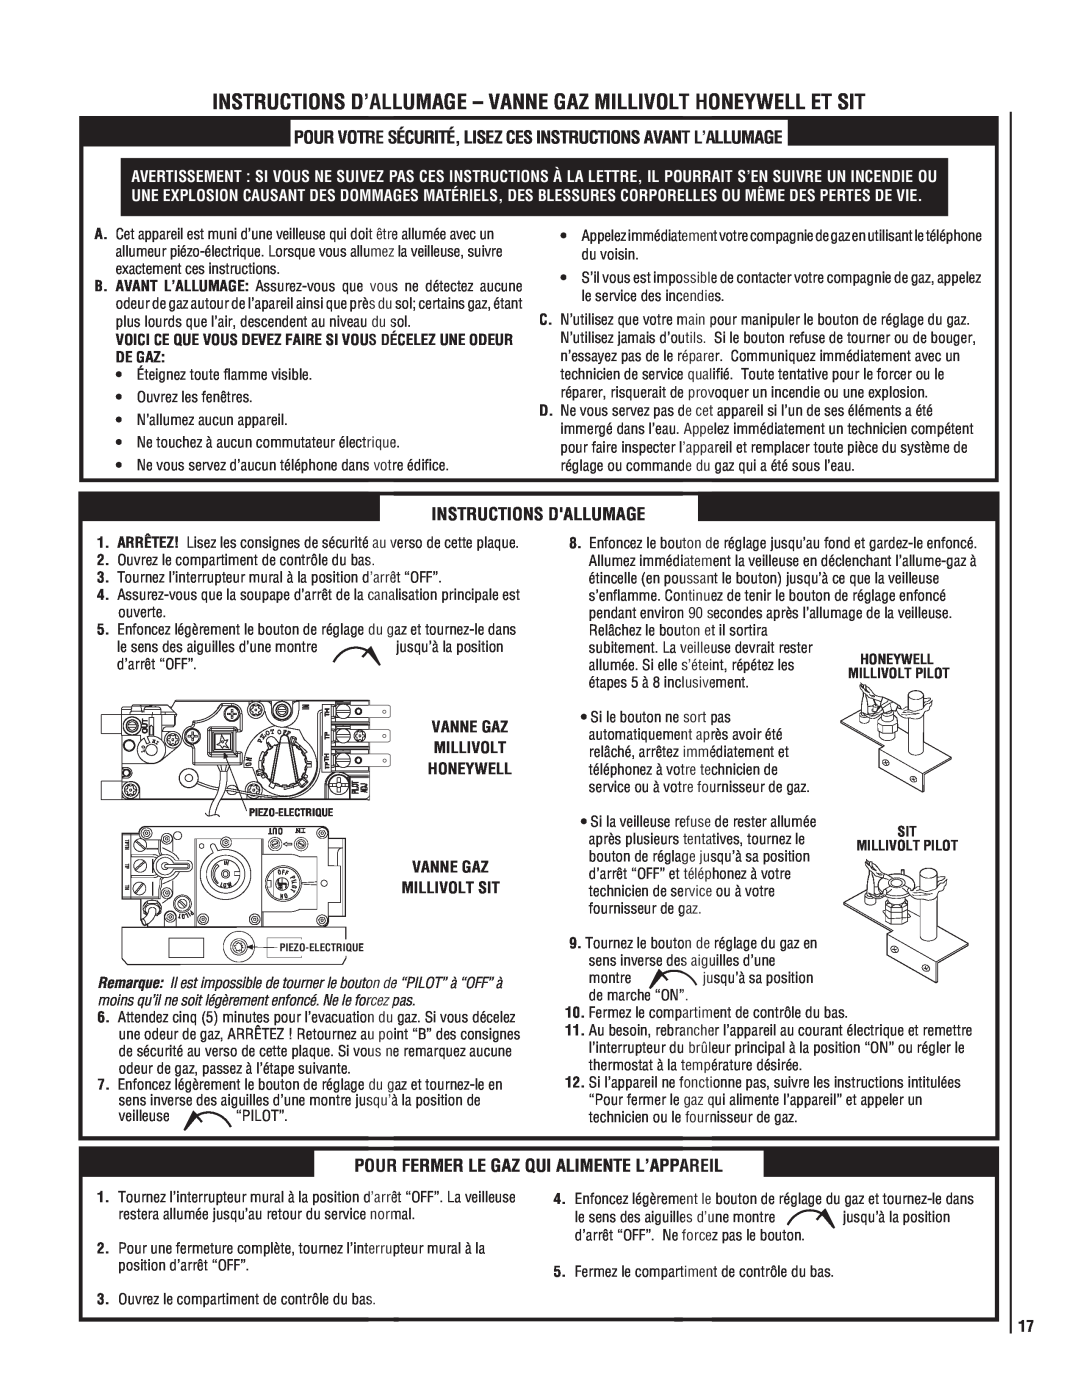 Superior SSDVT-3328CNM manual Instructions Dallumage, Pour Fermer Le Gaz Qui Alimente L’Appareil 